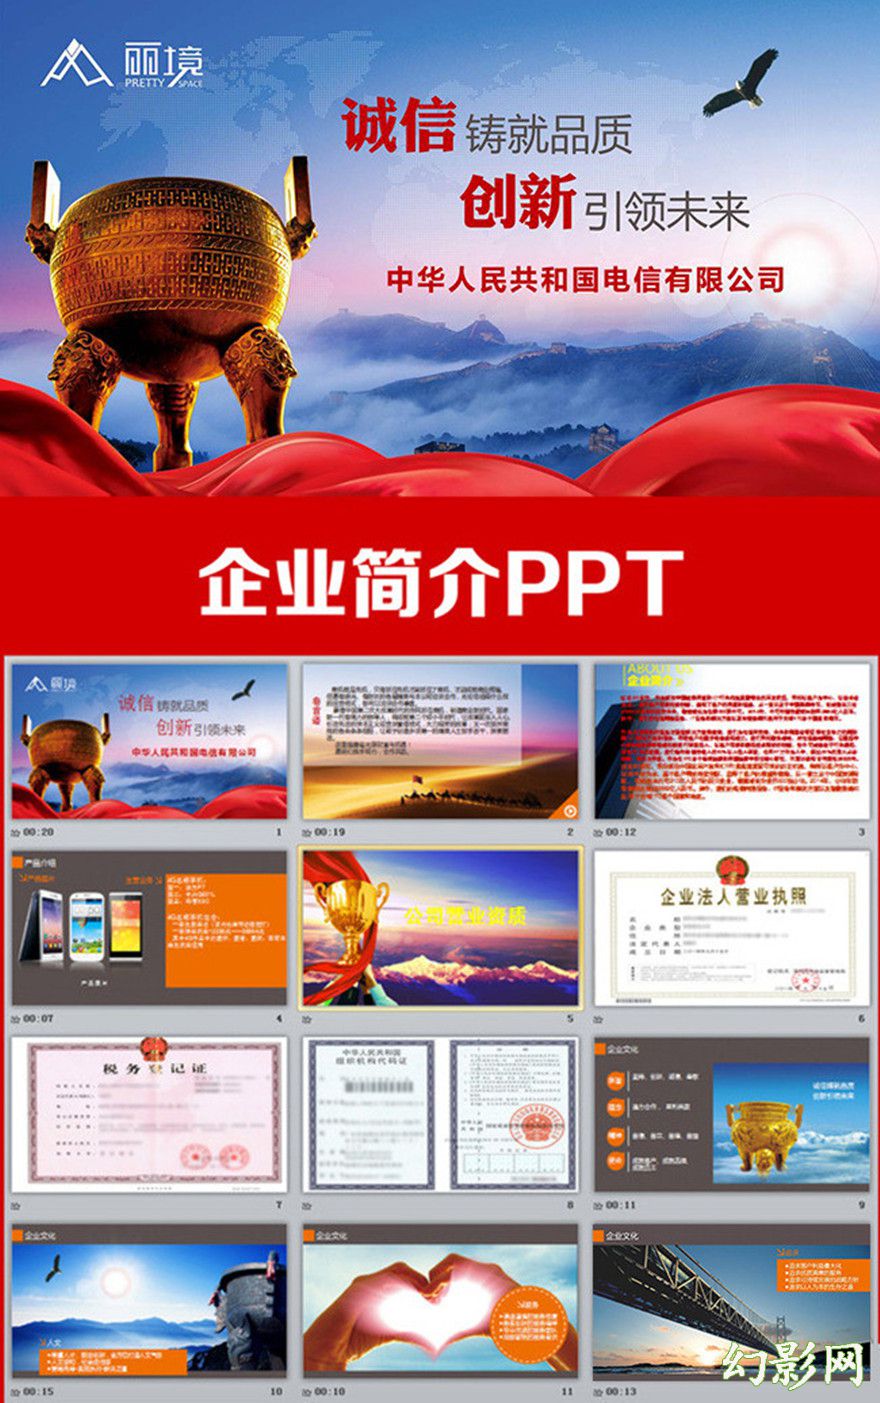 企业简介企业文化宣传红色大气PPT模板